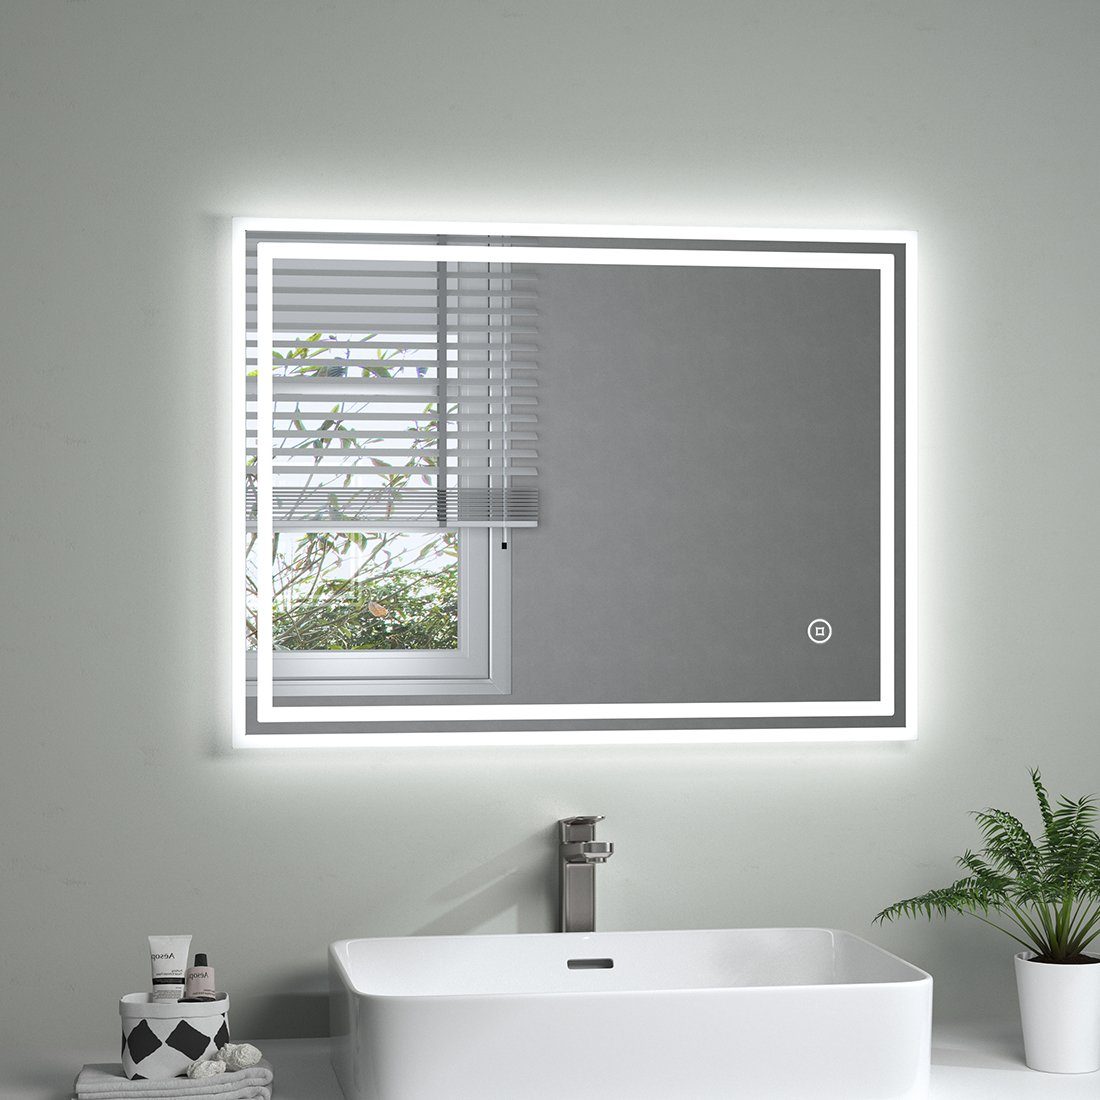 S'AFIELINA Badspiegel Rechteckiger LED Badspiegel Badezimmerspiegel mit Beleuchtung, 3 Lichtfarben,Helligkeit Einstellbar,Beschlagfrei,IP44